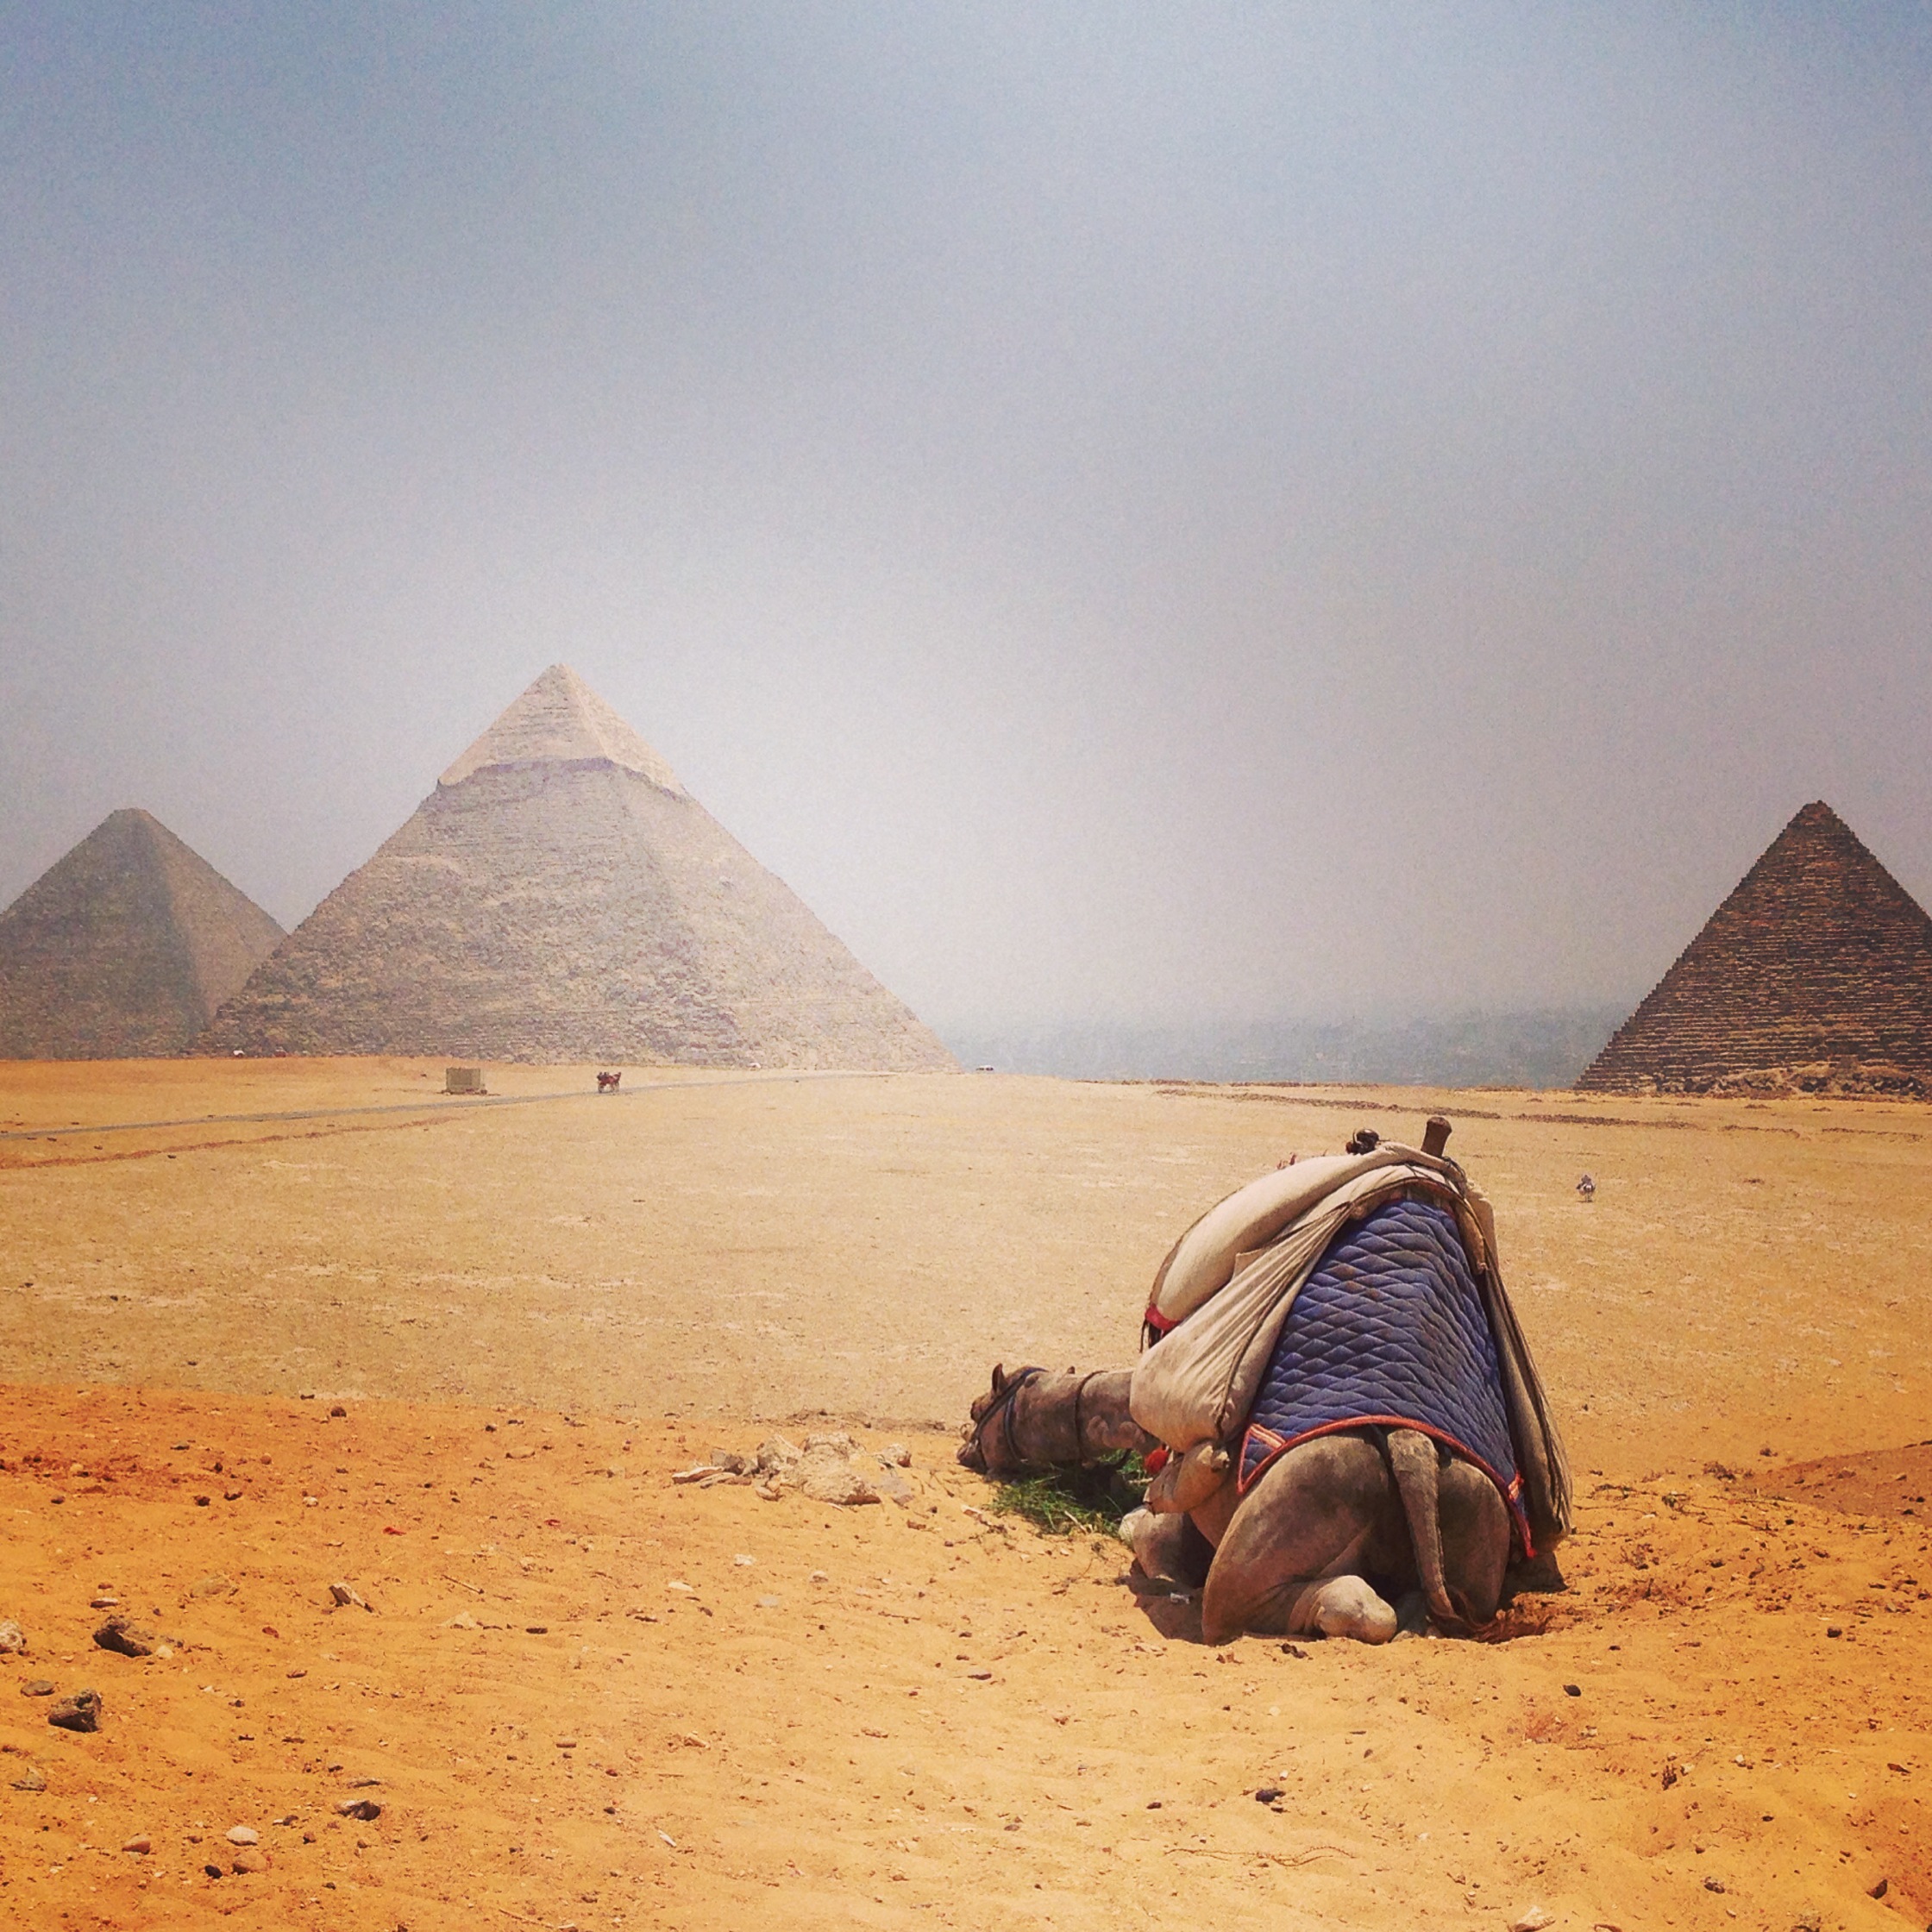 Trip Report: Cairo/Giza, Egypt